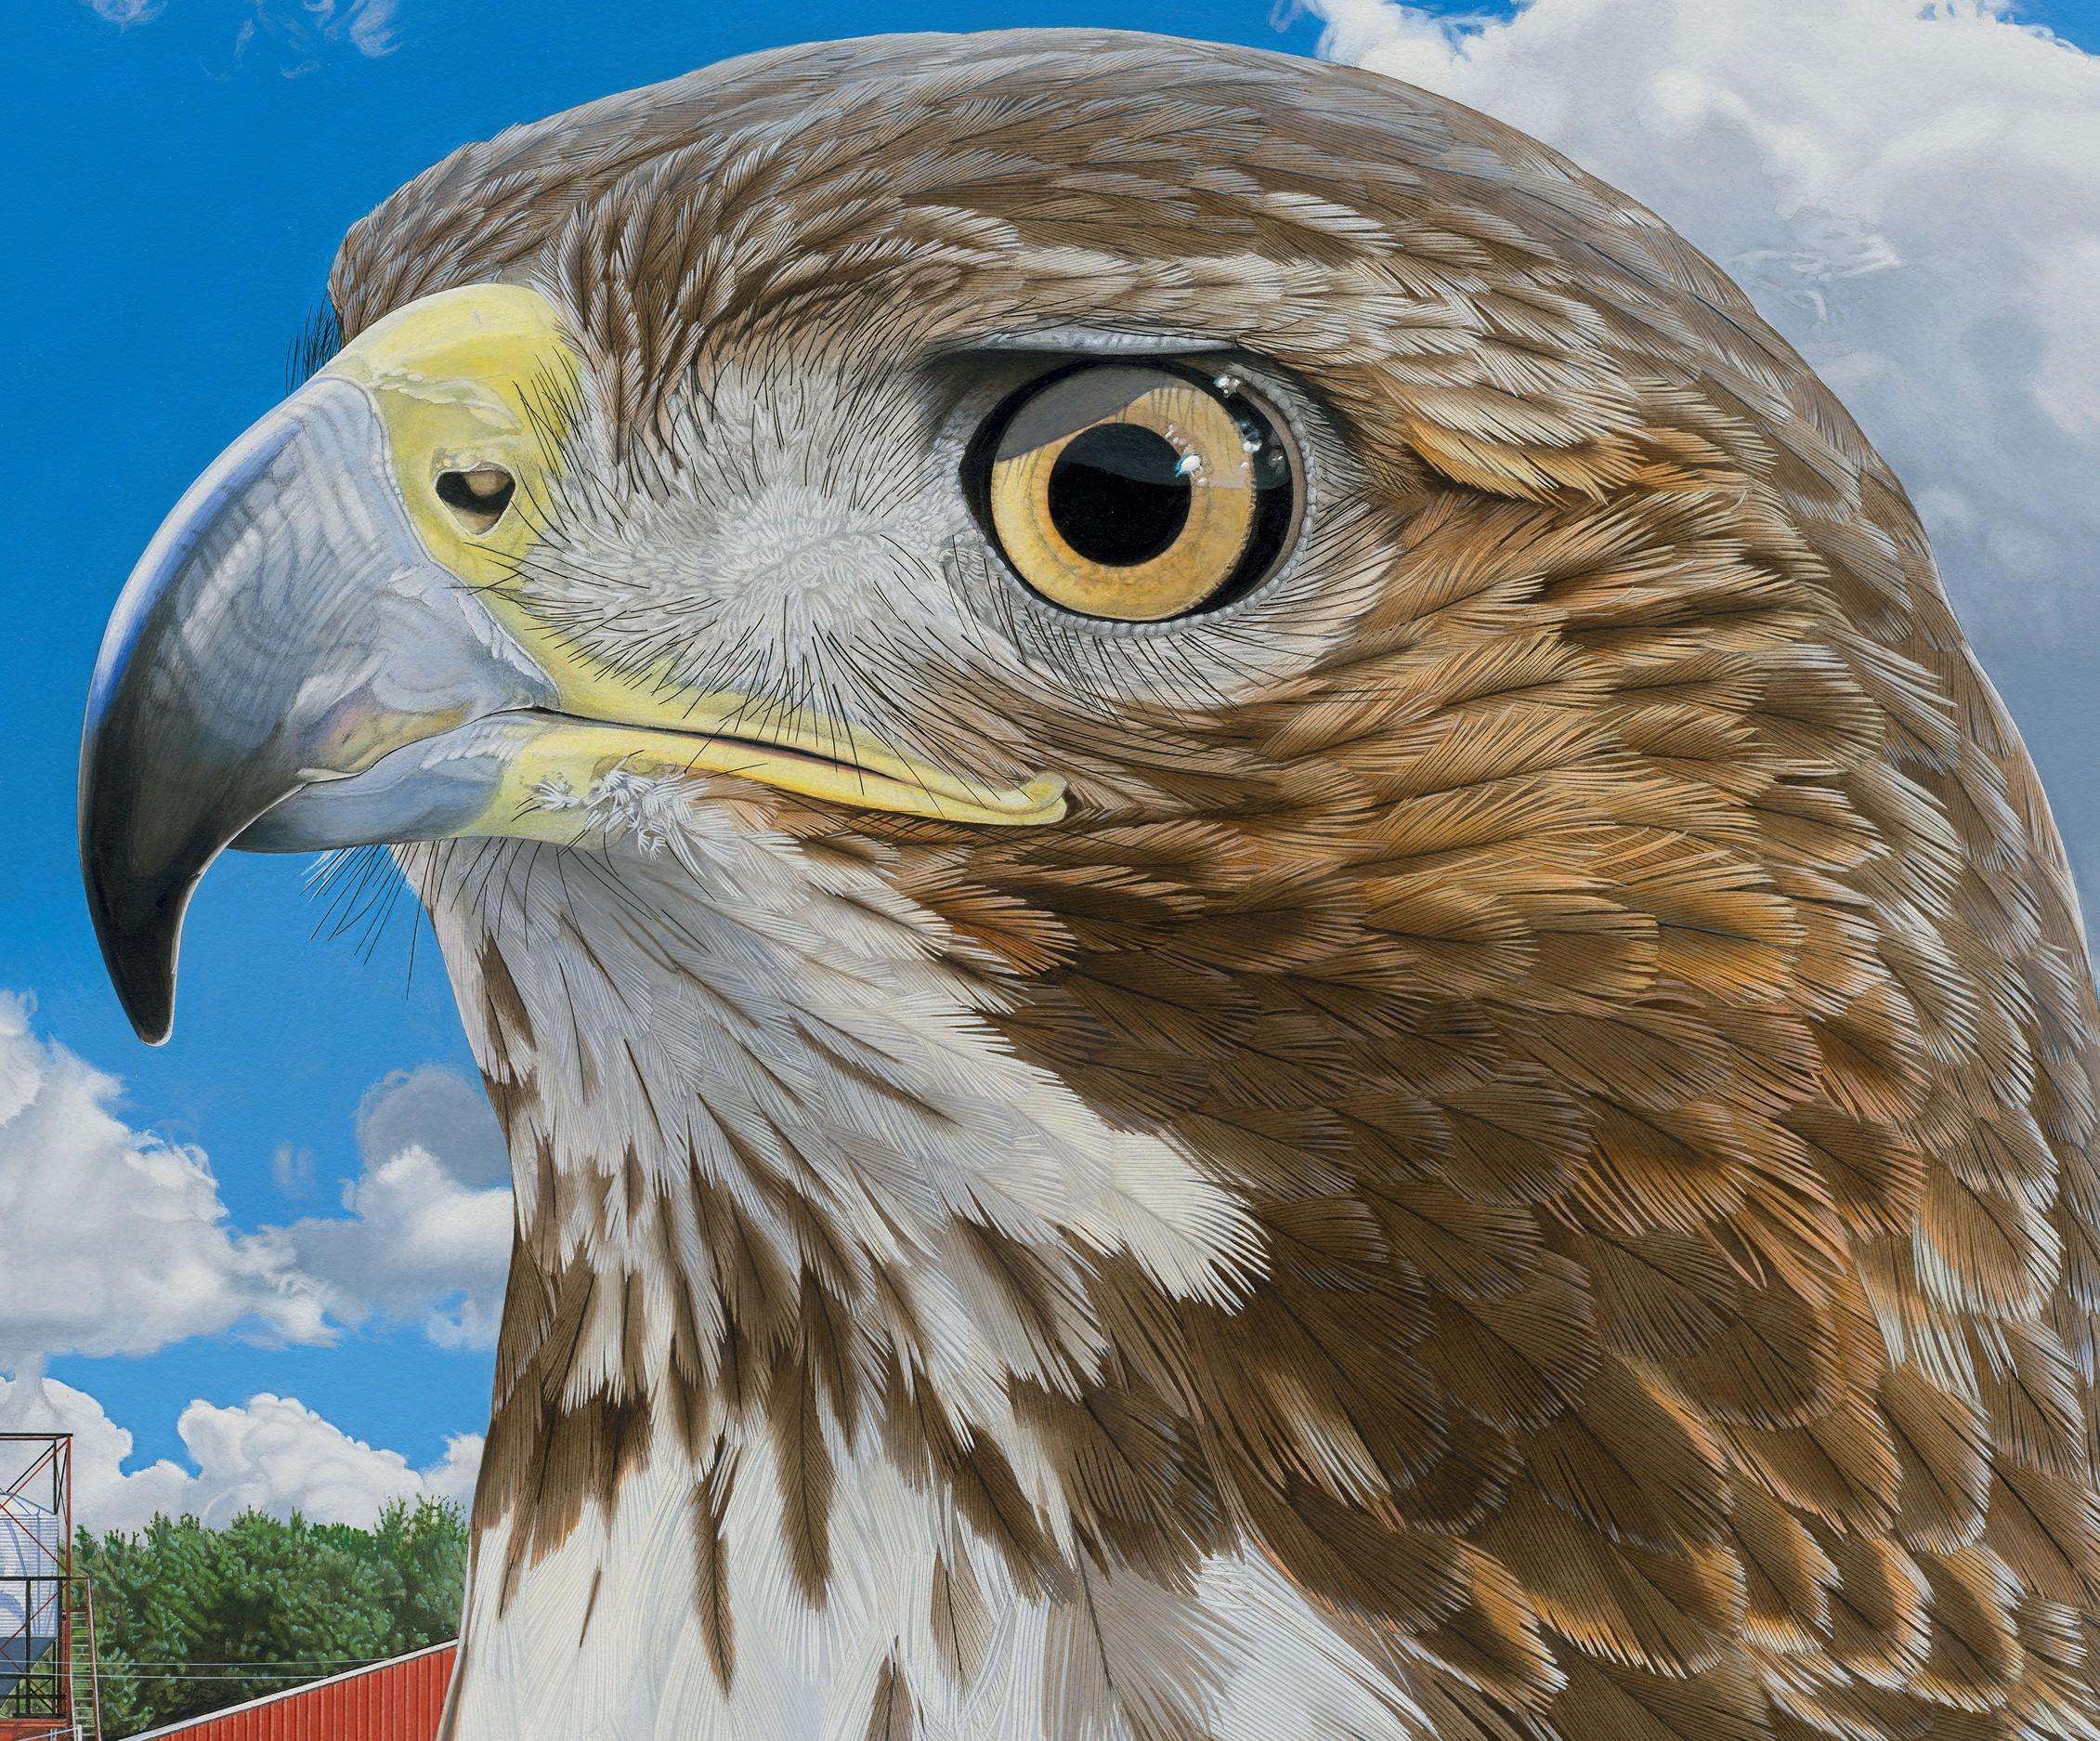 Nelson's Redtail - Photorealistic Portrait of a Hawk, Farm Landscape Backdrop - Painting by Rick Pas